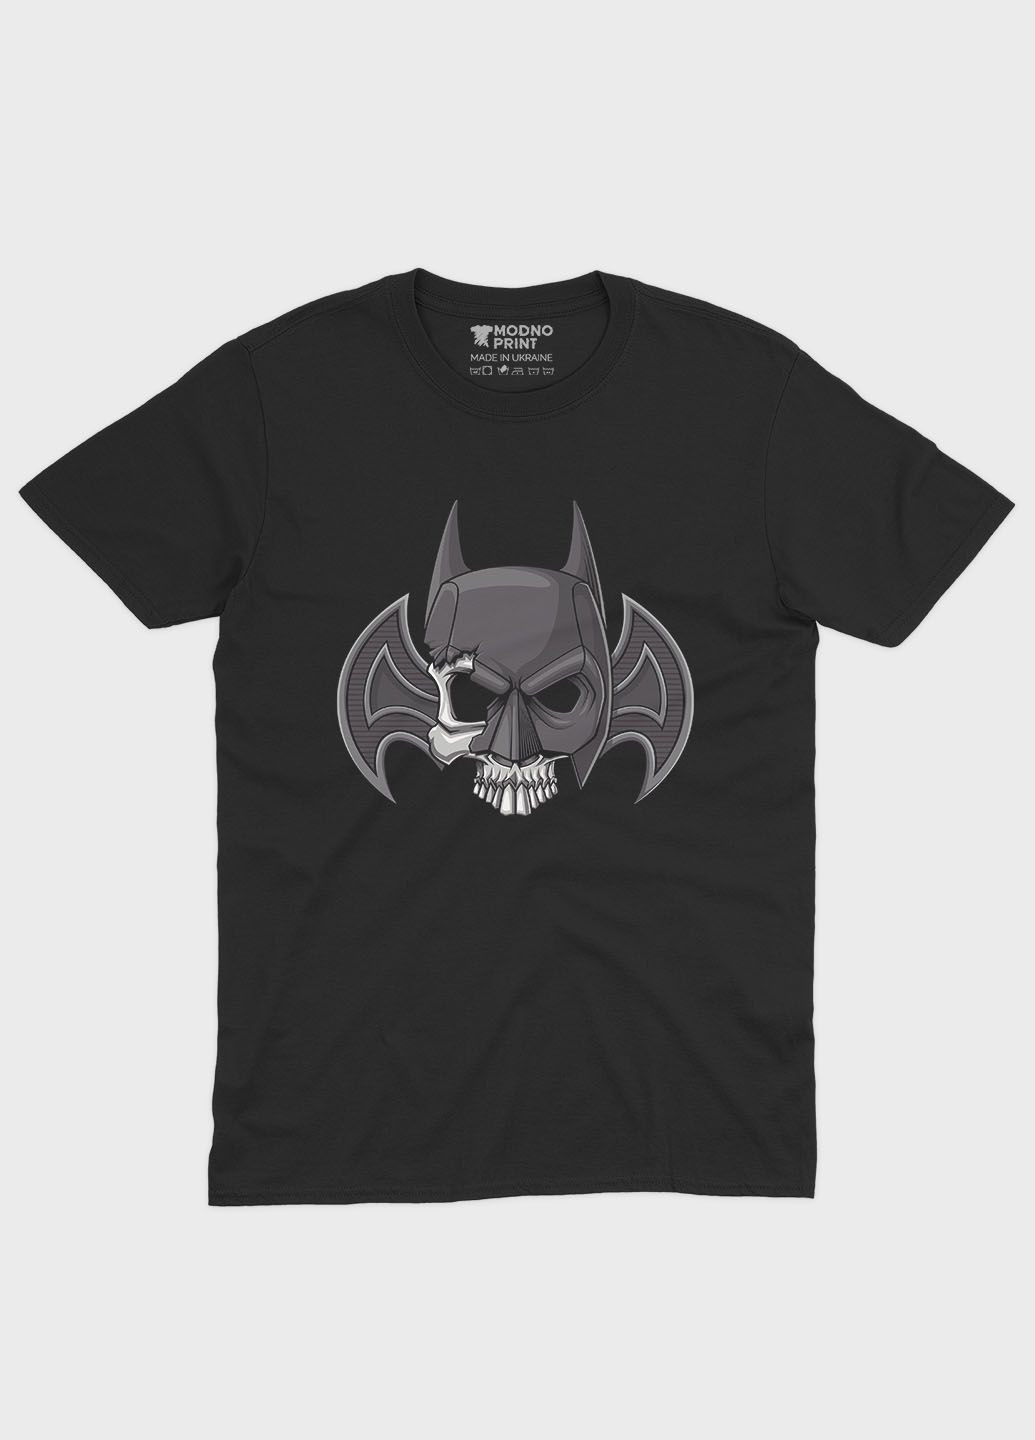 Черная мужская футболка с принтом супергероя - бэтмен (ts001-1-bl-006-003-005) Modno